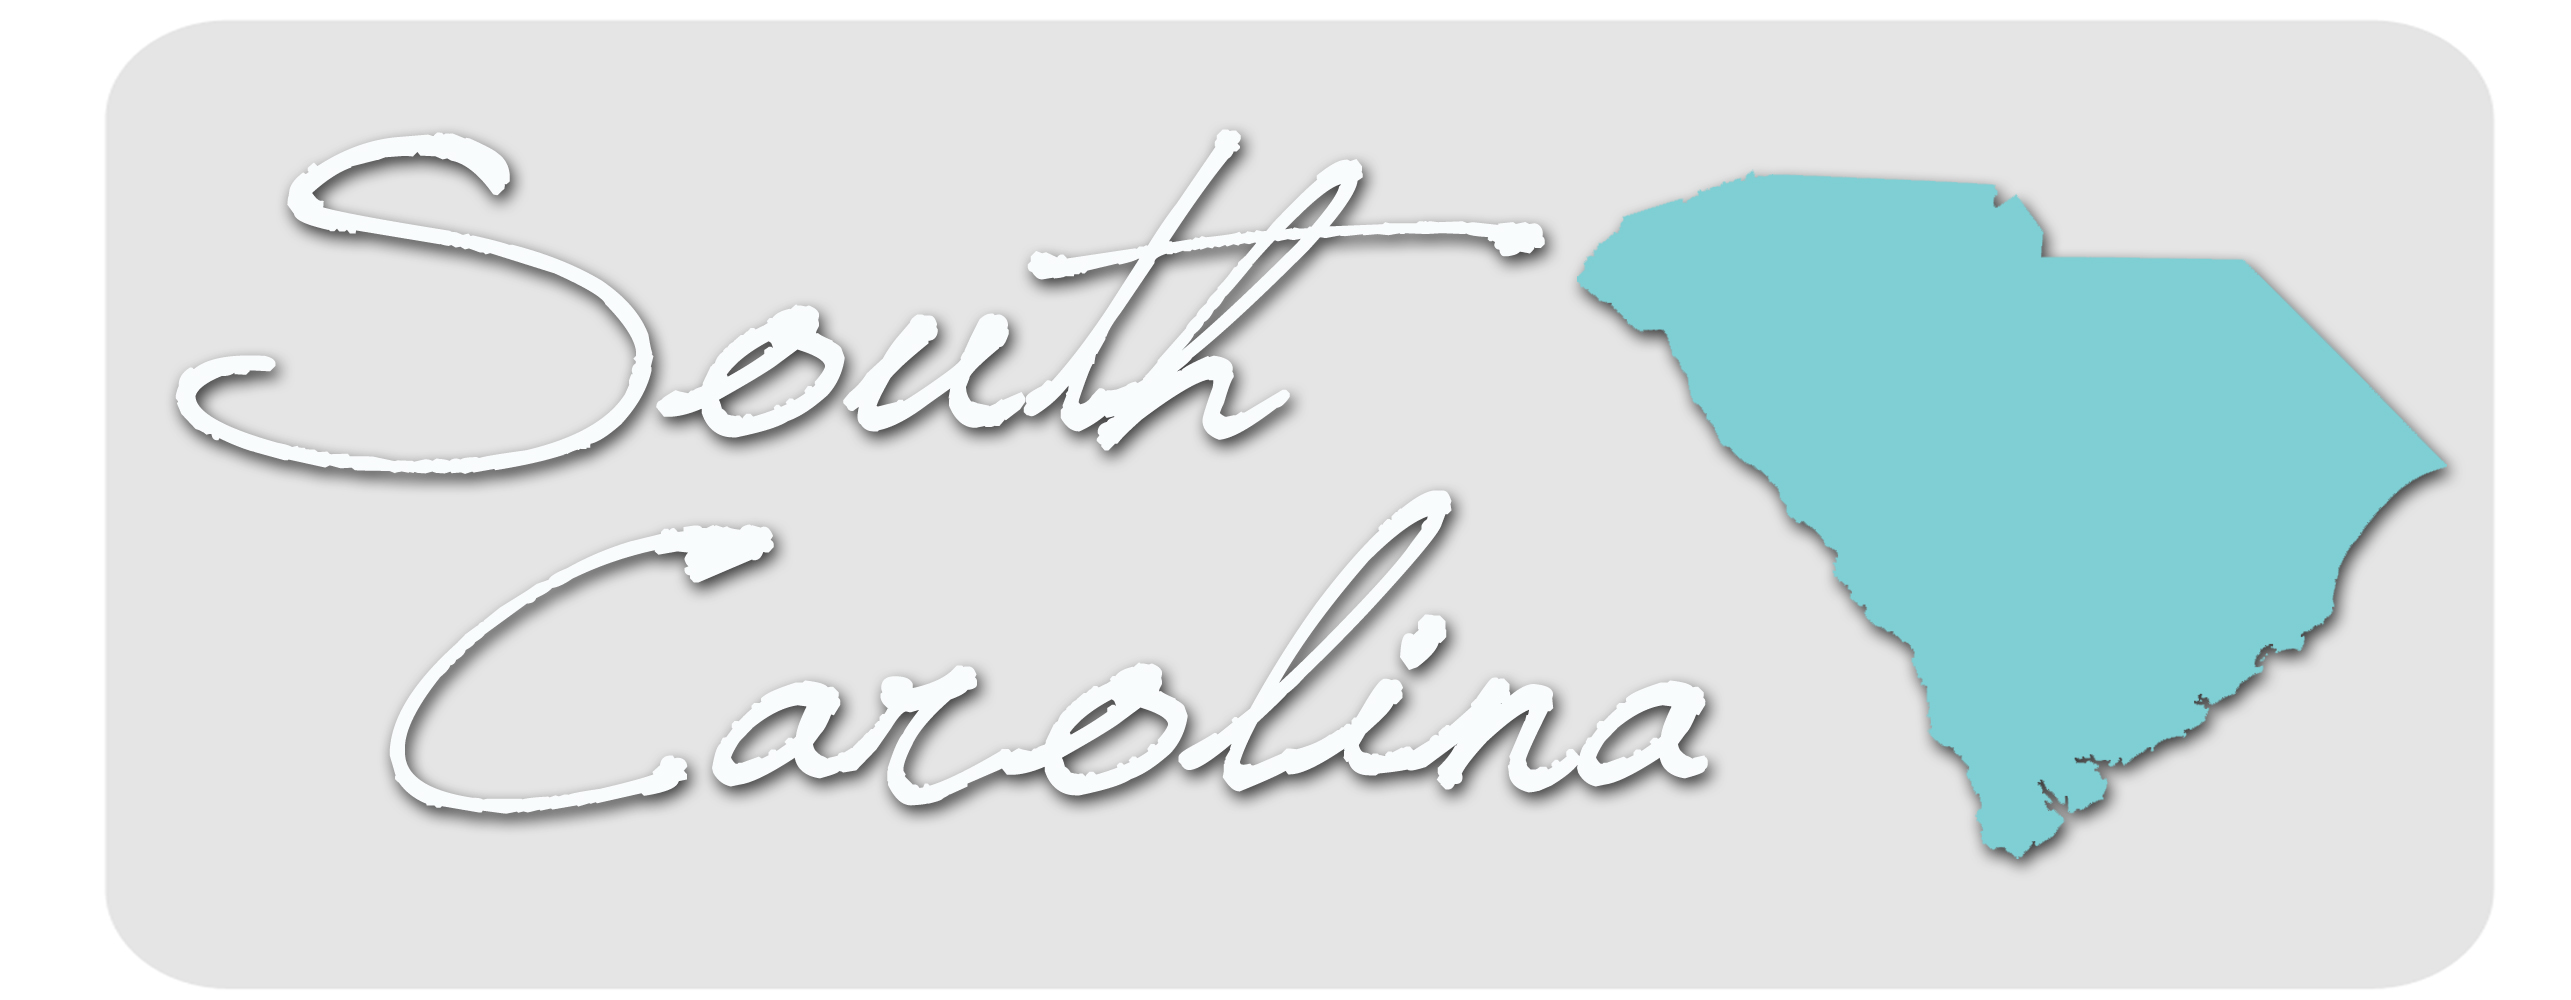 South Carolina health insurance